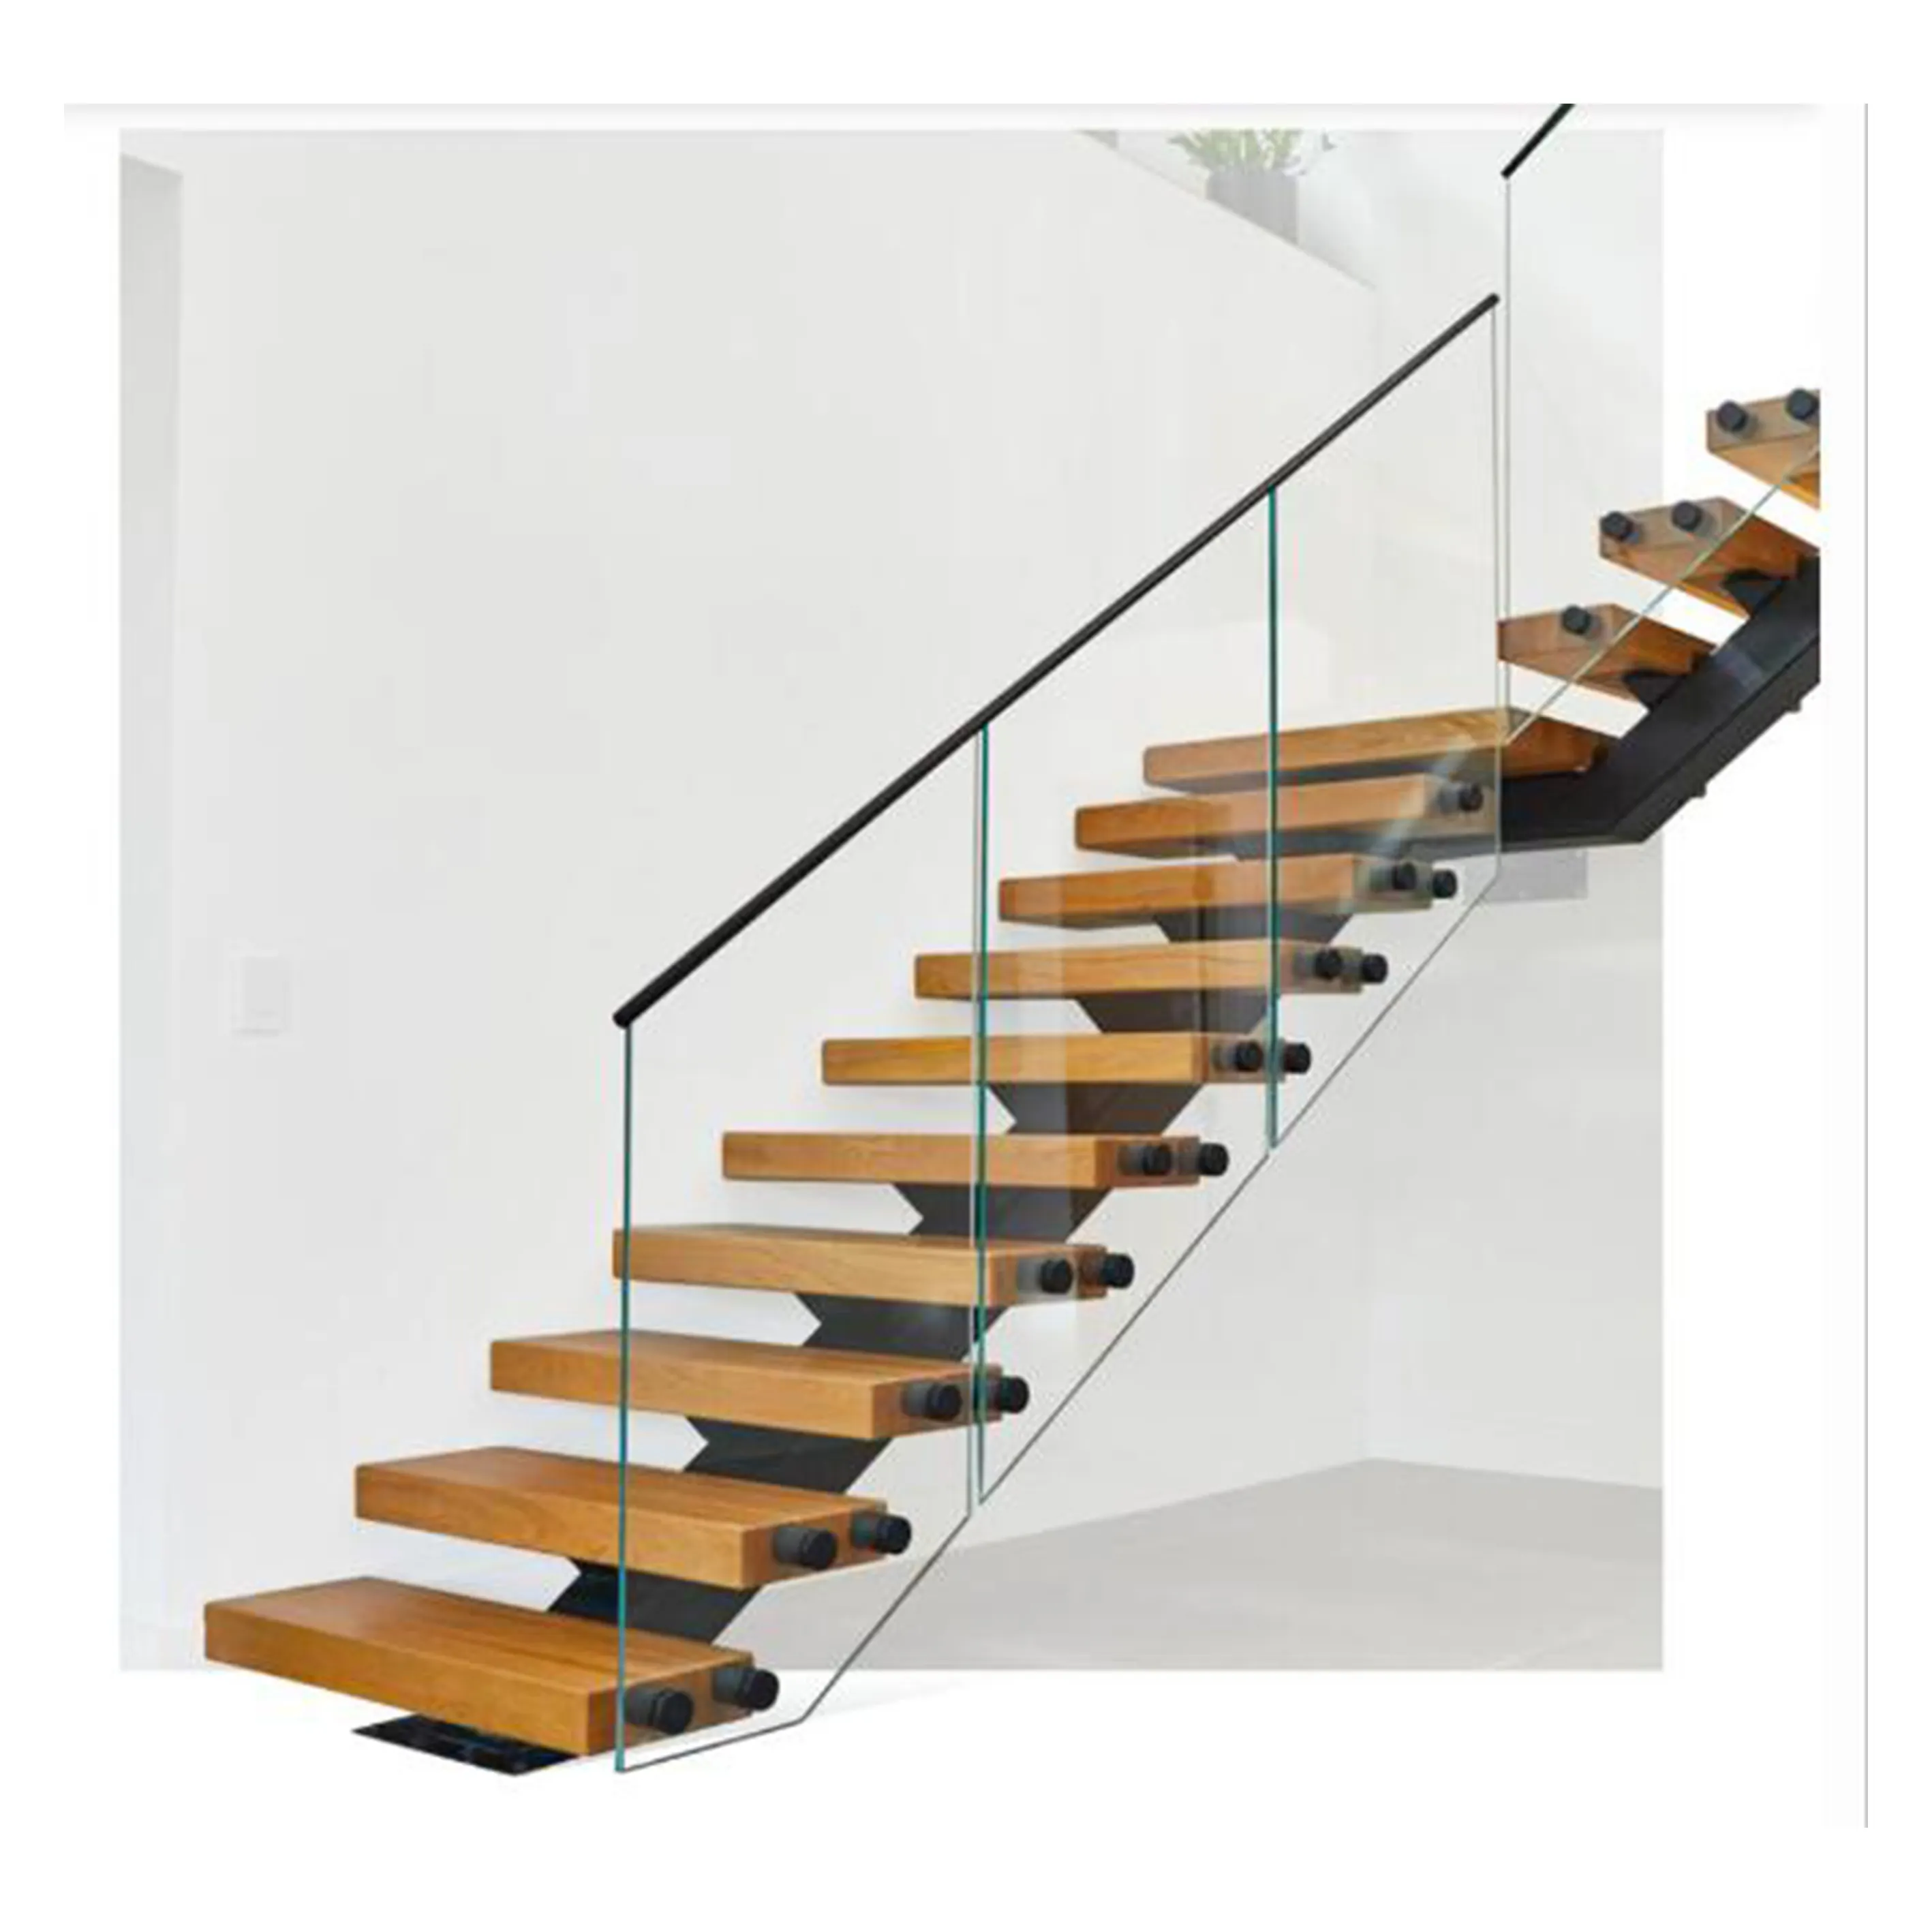 Phổ biến cầu thang thiết kế các nhà sản xuất thép nổi Mono escalier ráp dây cầu thang Hidden ráp dây thép trung tâm cầu thang